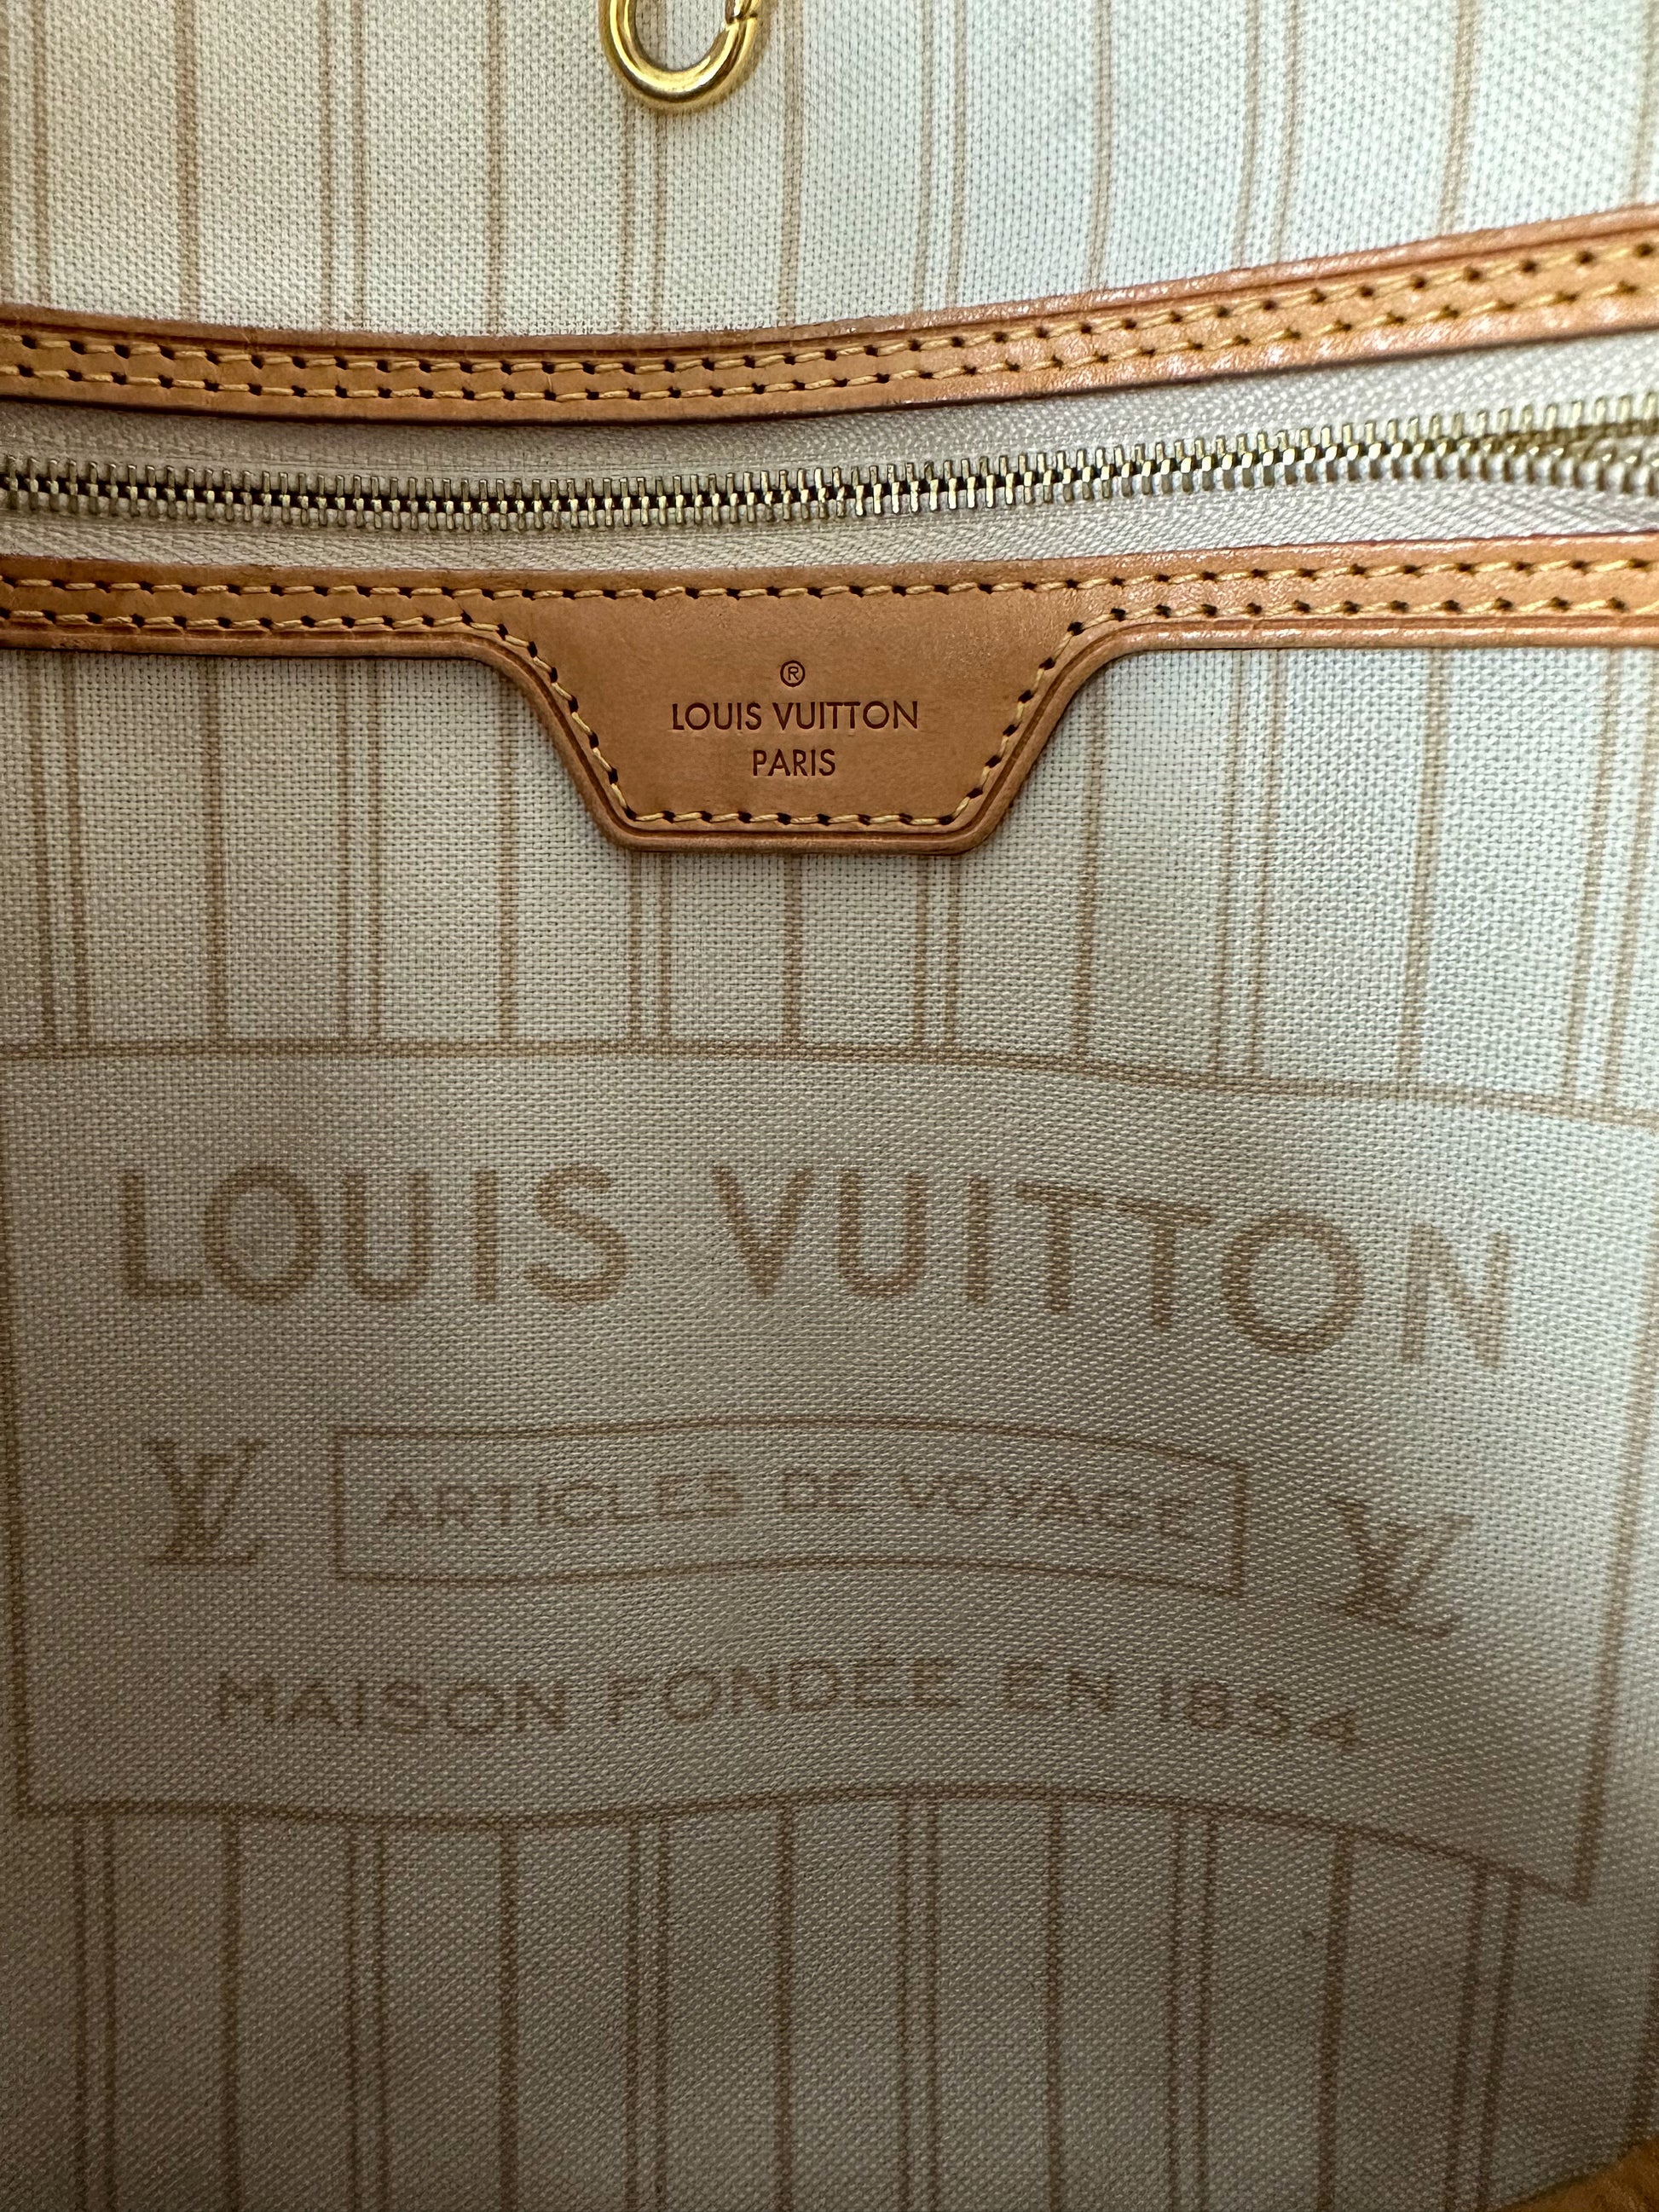 LOUIS VUITTON Pochette Wristlet Pouch Damier Azur Neverfull MM/GM-US